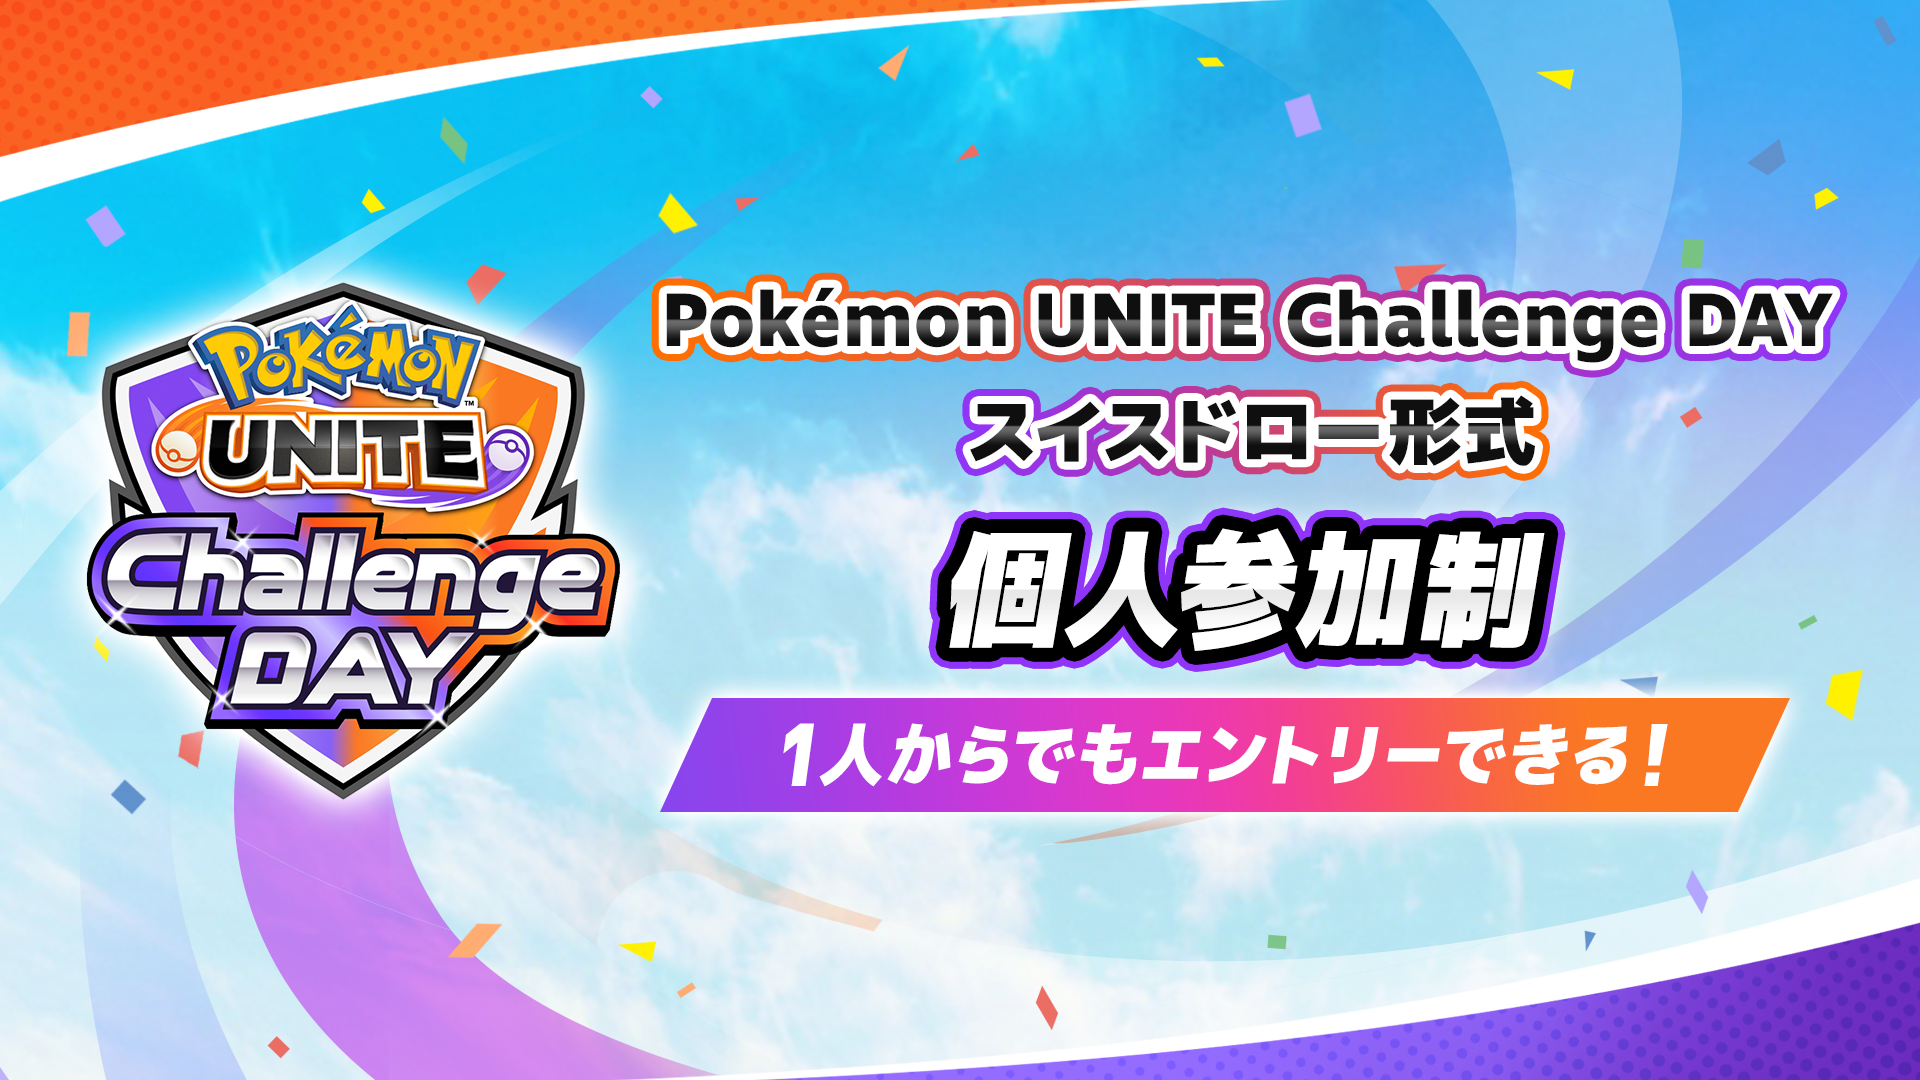 Pokemon UNITE Challenge DAY 09.24 個人参加制 スイスドロー形式